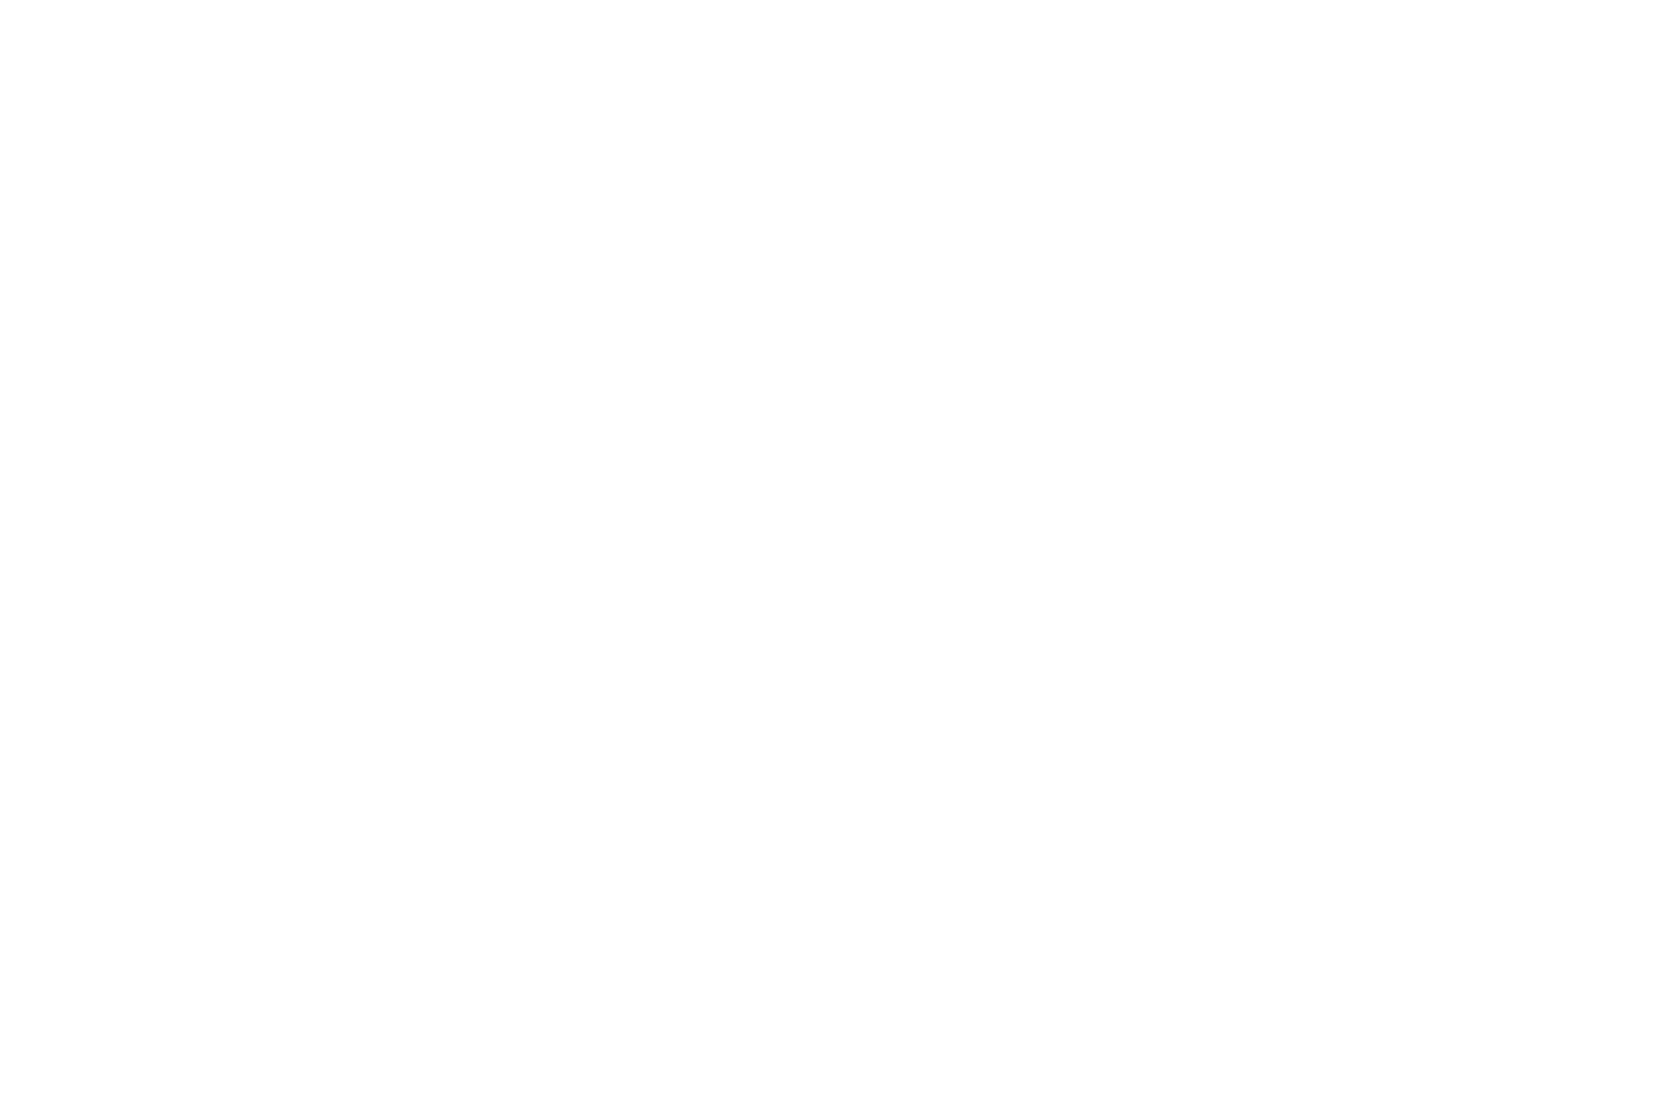 Инструктор стрелкового спорта ДОСАРМ А.Г. Лыкин с учениками СШ №42 г. Минска осматривают мишени после стрельбы 